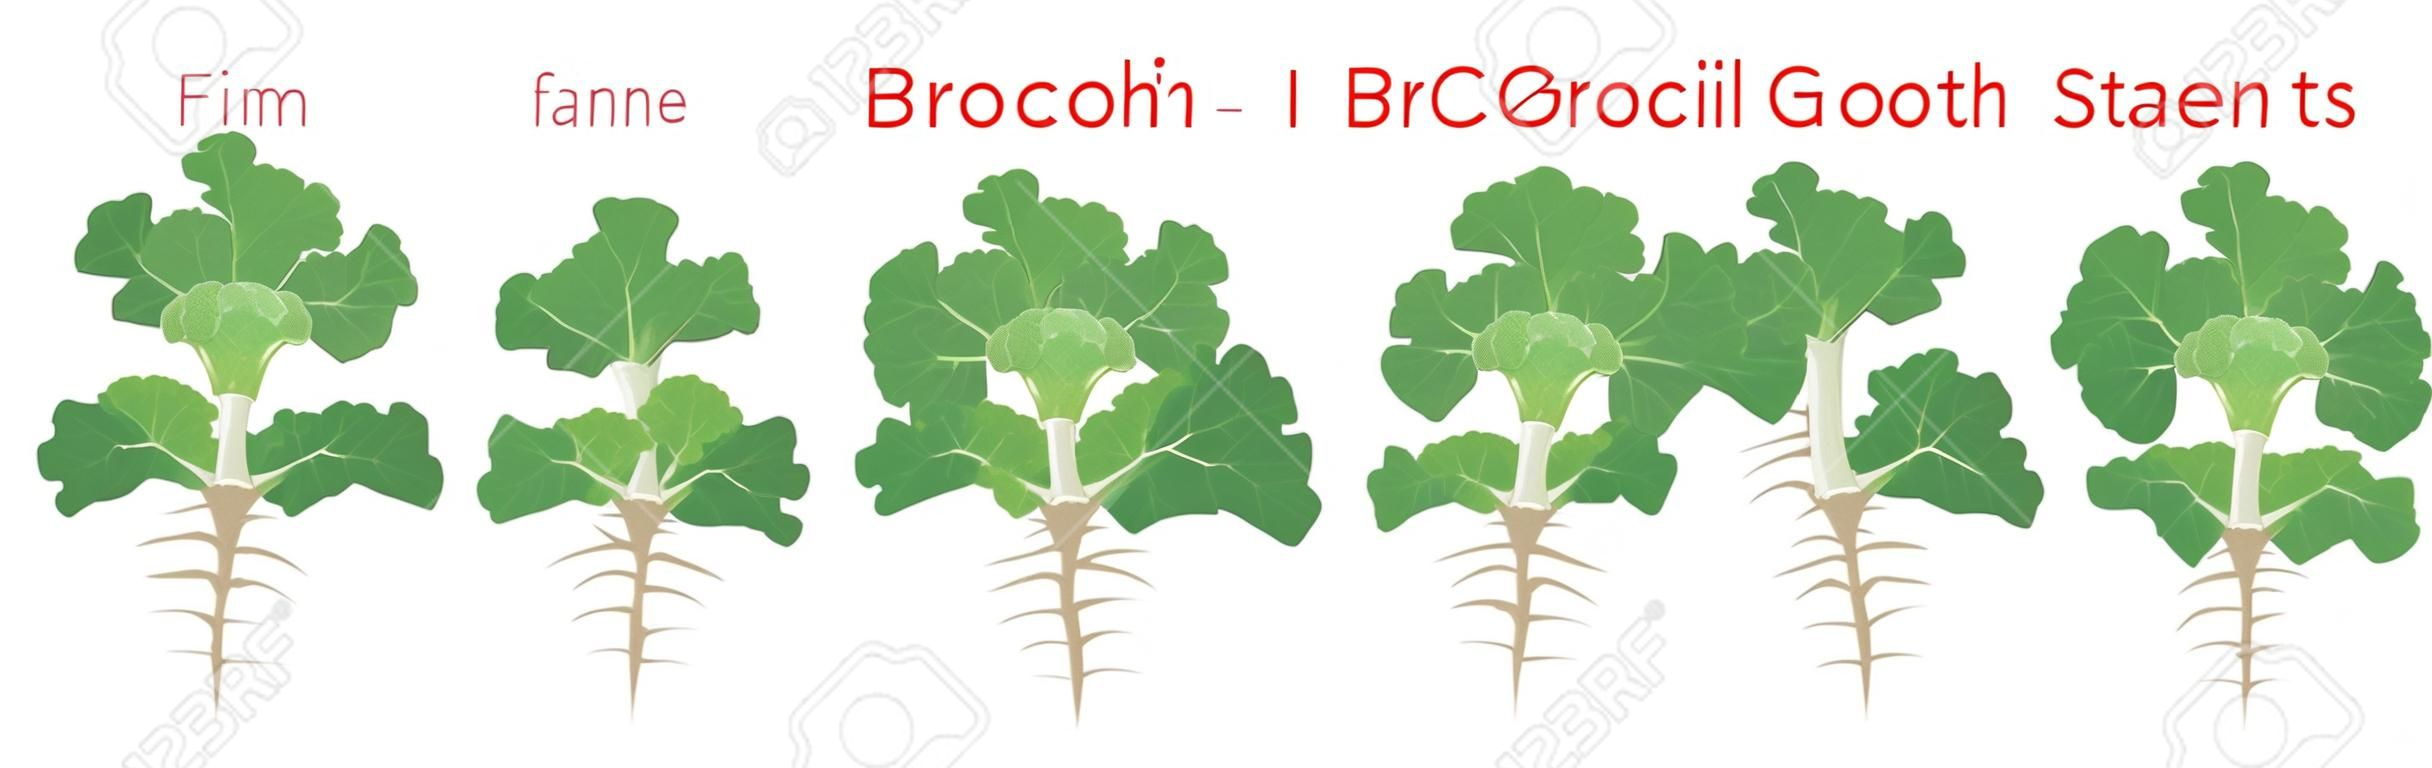 Etapas de crecimiento de la planta de brócoli elementos infográficos. Proceso de crecimiento de brócoli a partir de semillas, brote a planta madura con raíces, ciclo de vida de la planta aislada en la ilustración plana de vector de fondo blanco